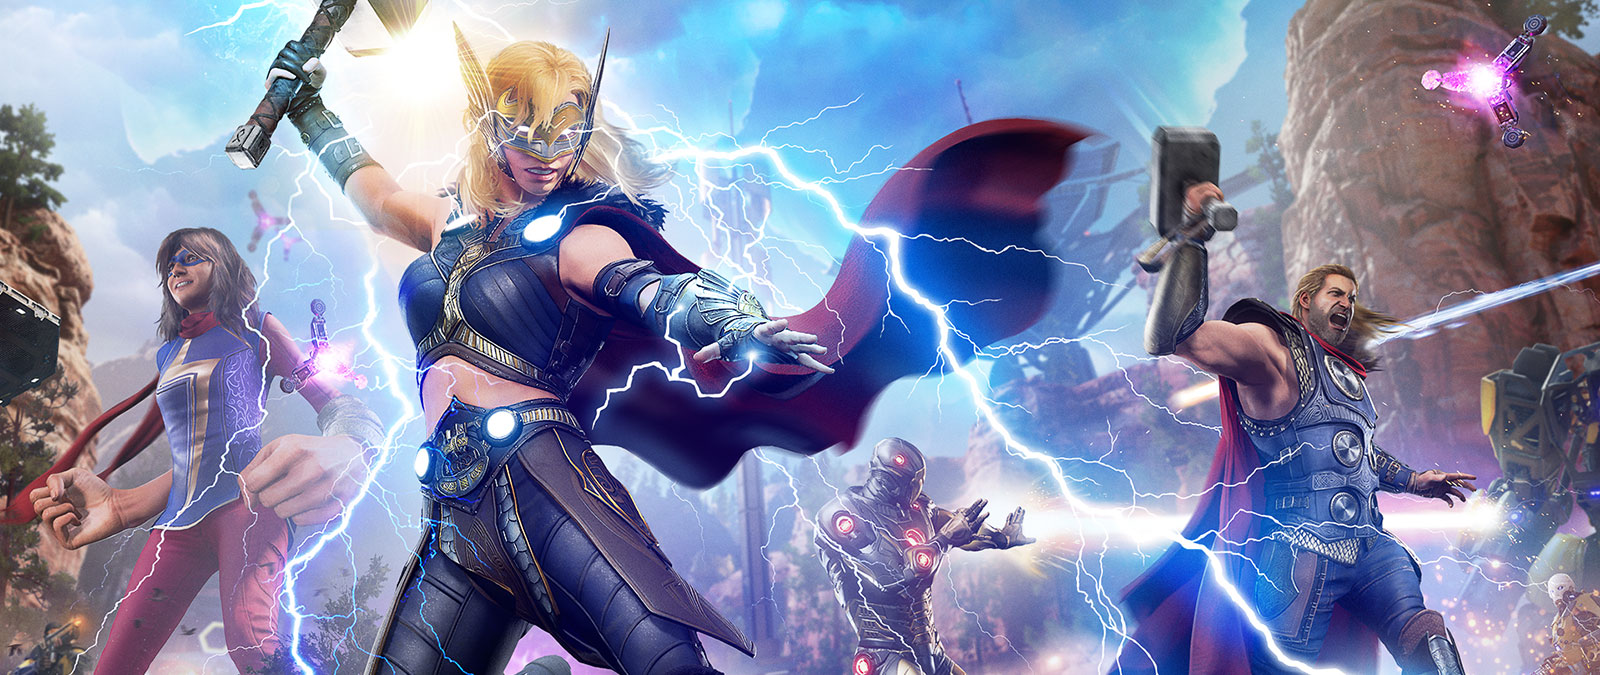 Jane Foster, Mighty Thor, suelta un rayo sobre un enemigo mecánico.